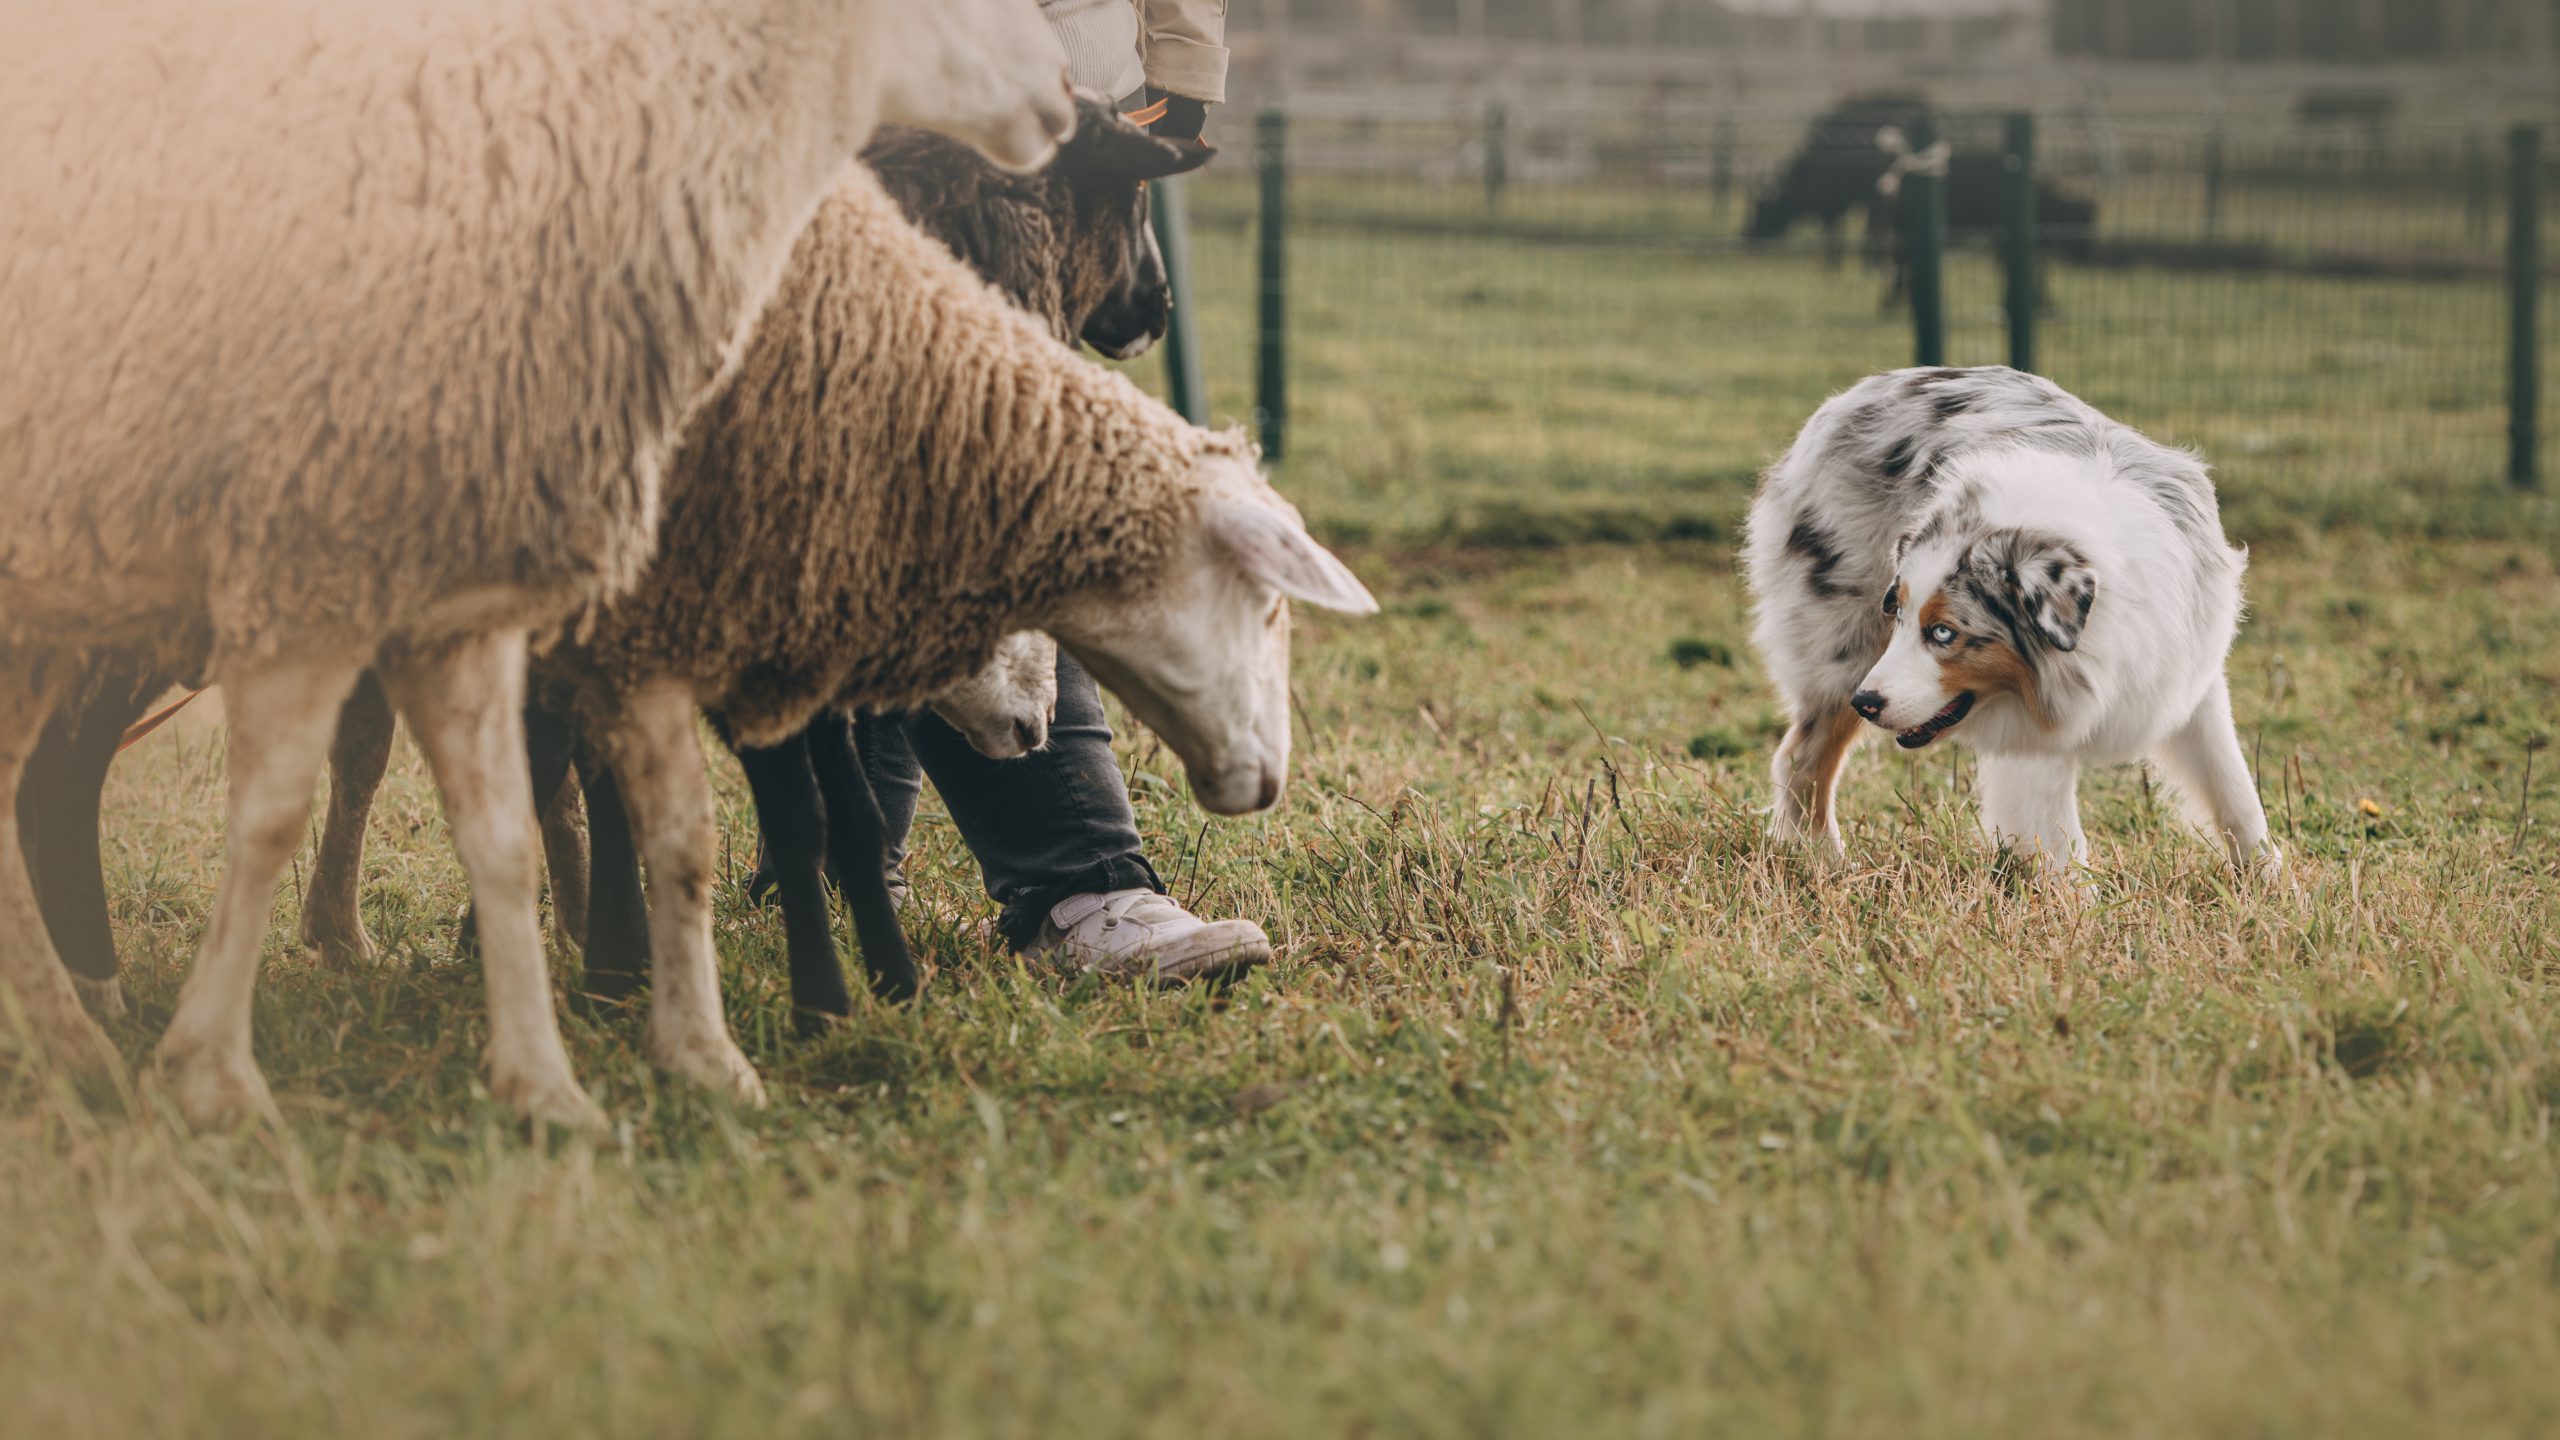 A Guide to Owning an Australian Shepherd - PetHelpful